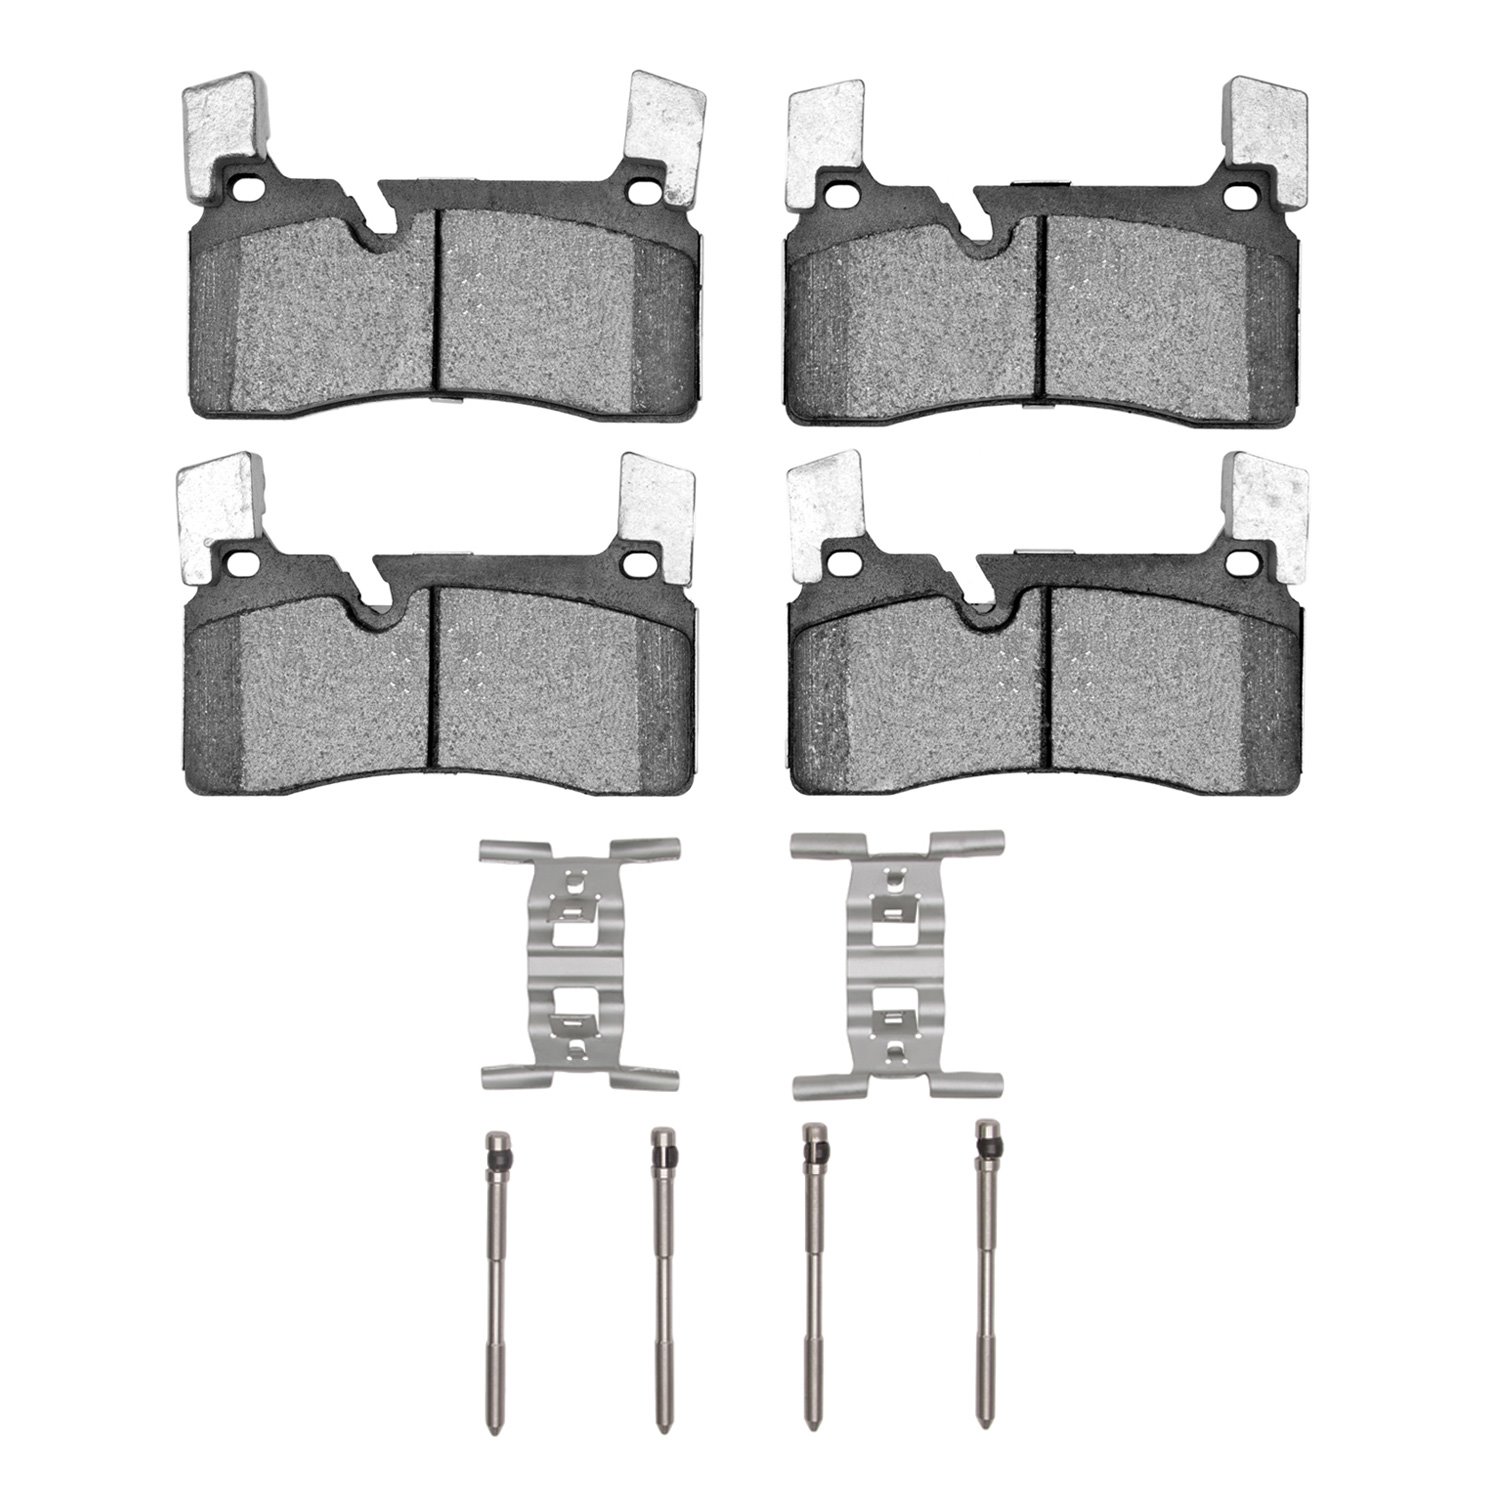 1310-1607-01 3000-Series Ceramic Brake Pads & Hardware Kit, 2011-2015 Mercedes-Benz, Position: Rear